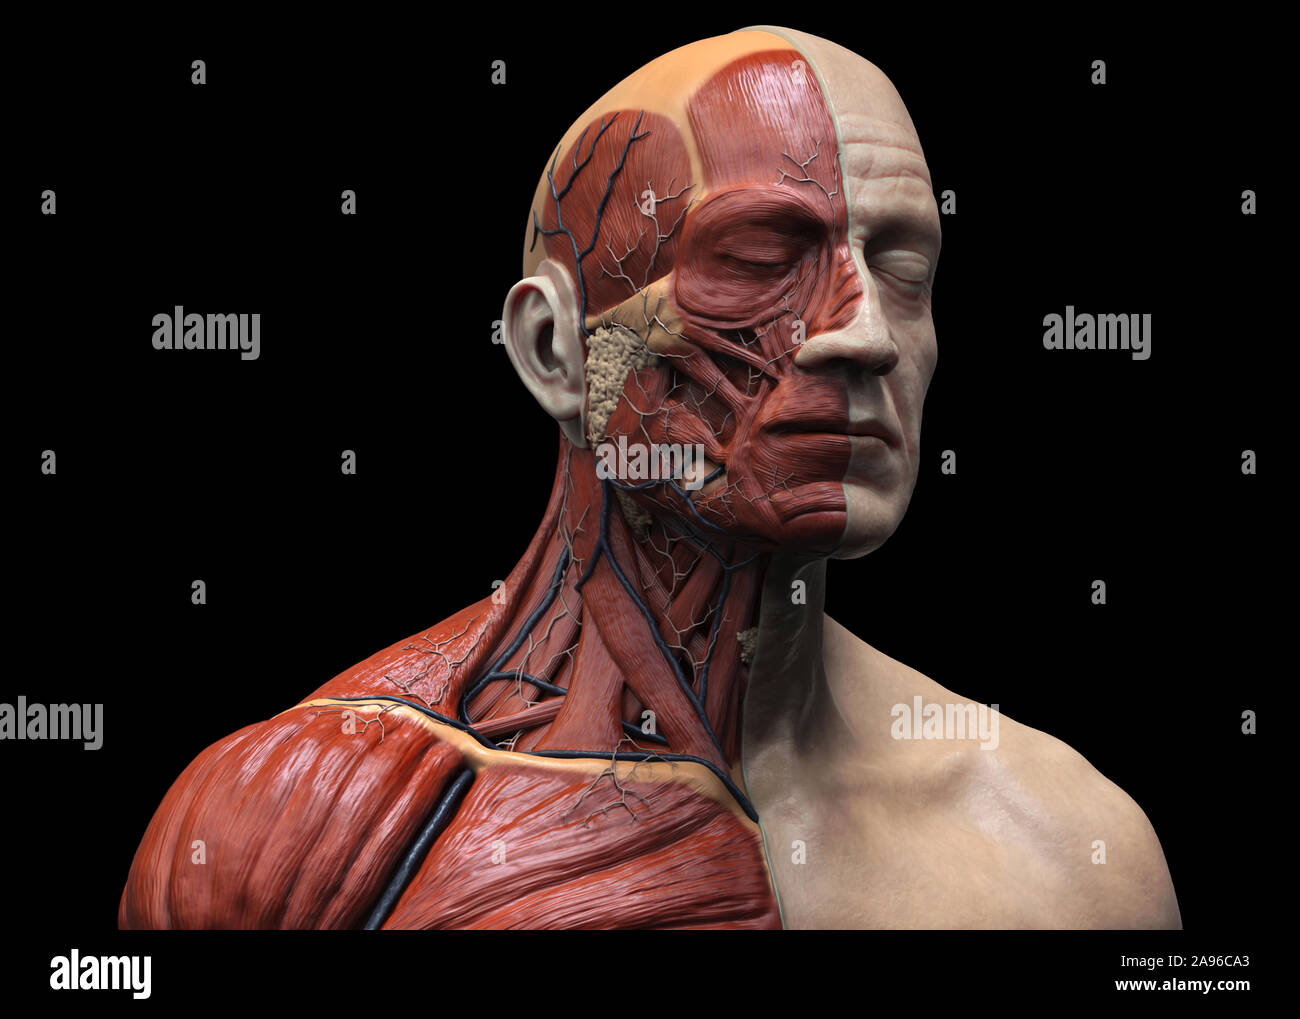 Les muscles de l'anatomie du corps humain structure d'un homme, vue de face Vue de côté et la perspective , rendu 3D réaliste Banque D'Images